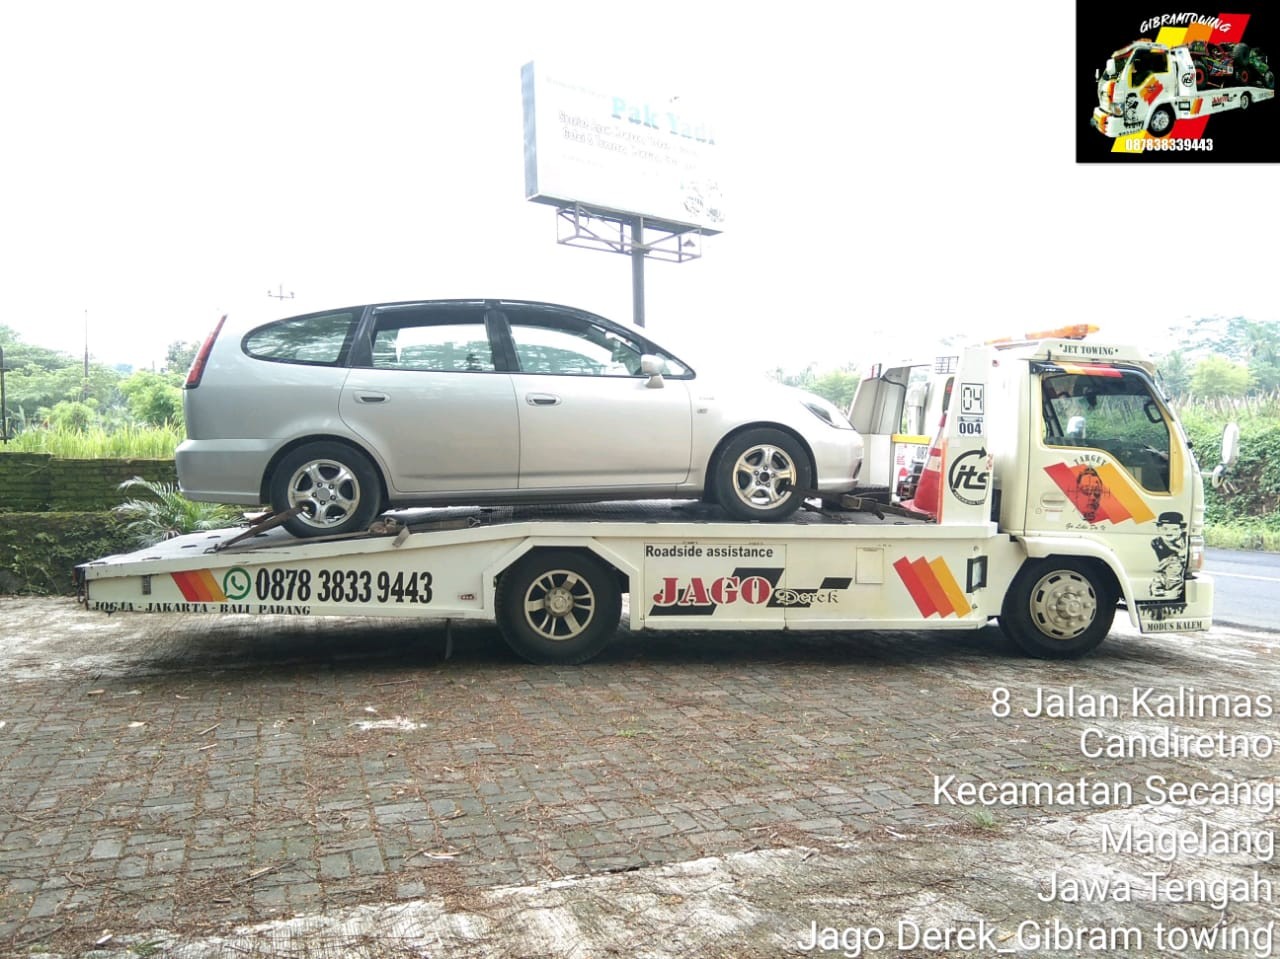 Jasa Derek Mobil Terdekat di Yogyakarta 085101189443